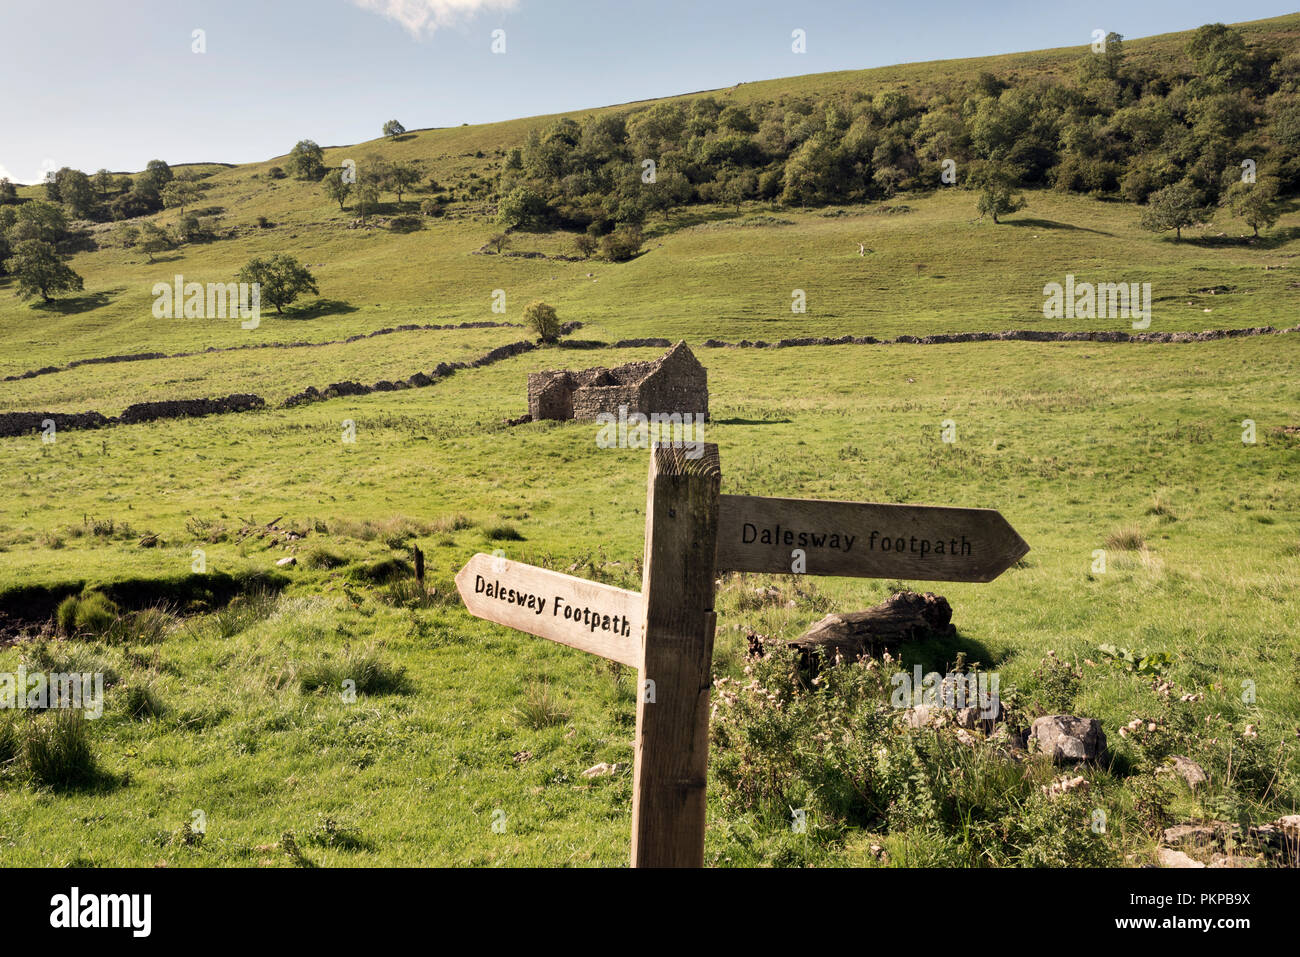 "Long distance Wanderweg der Dales Weg' in der Nähe von Starbotton, Wharfedale, in den Yorkshire Dales National Park, Großbritannien. Stockfoto